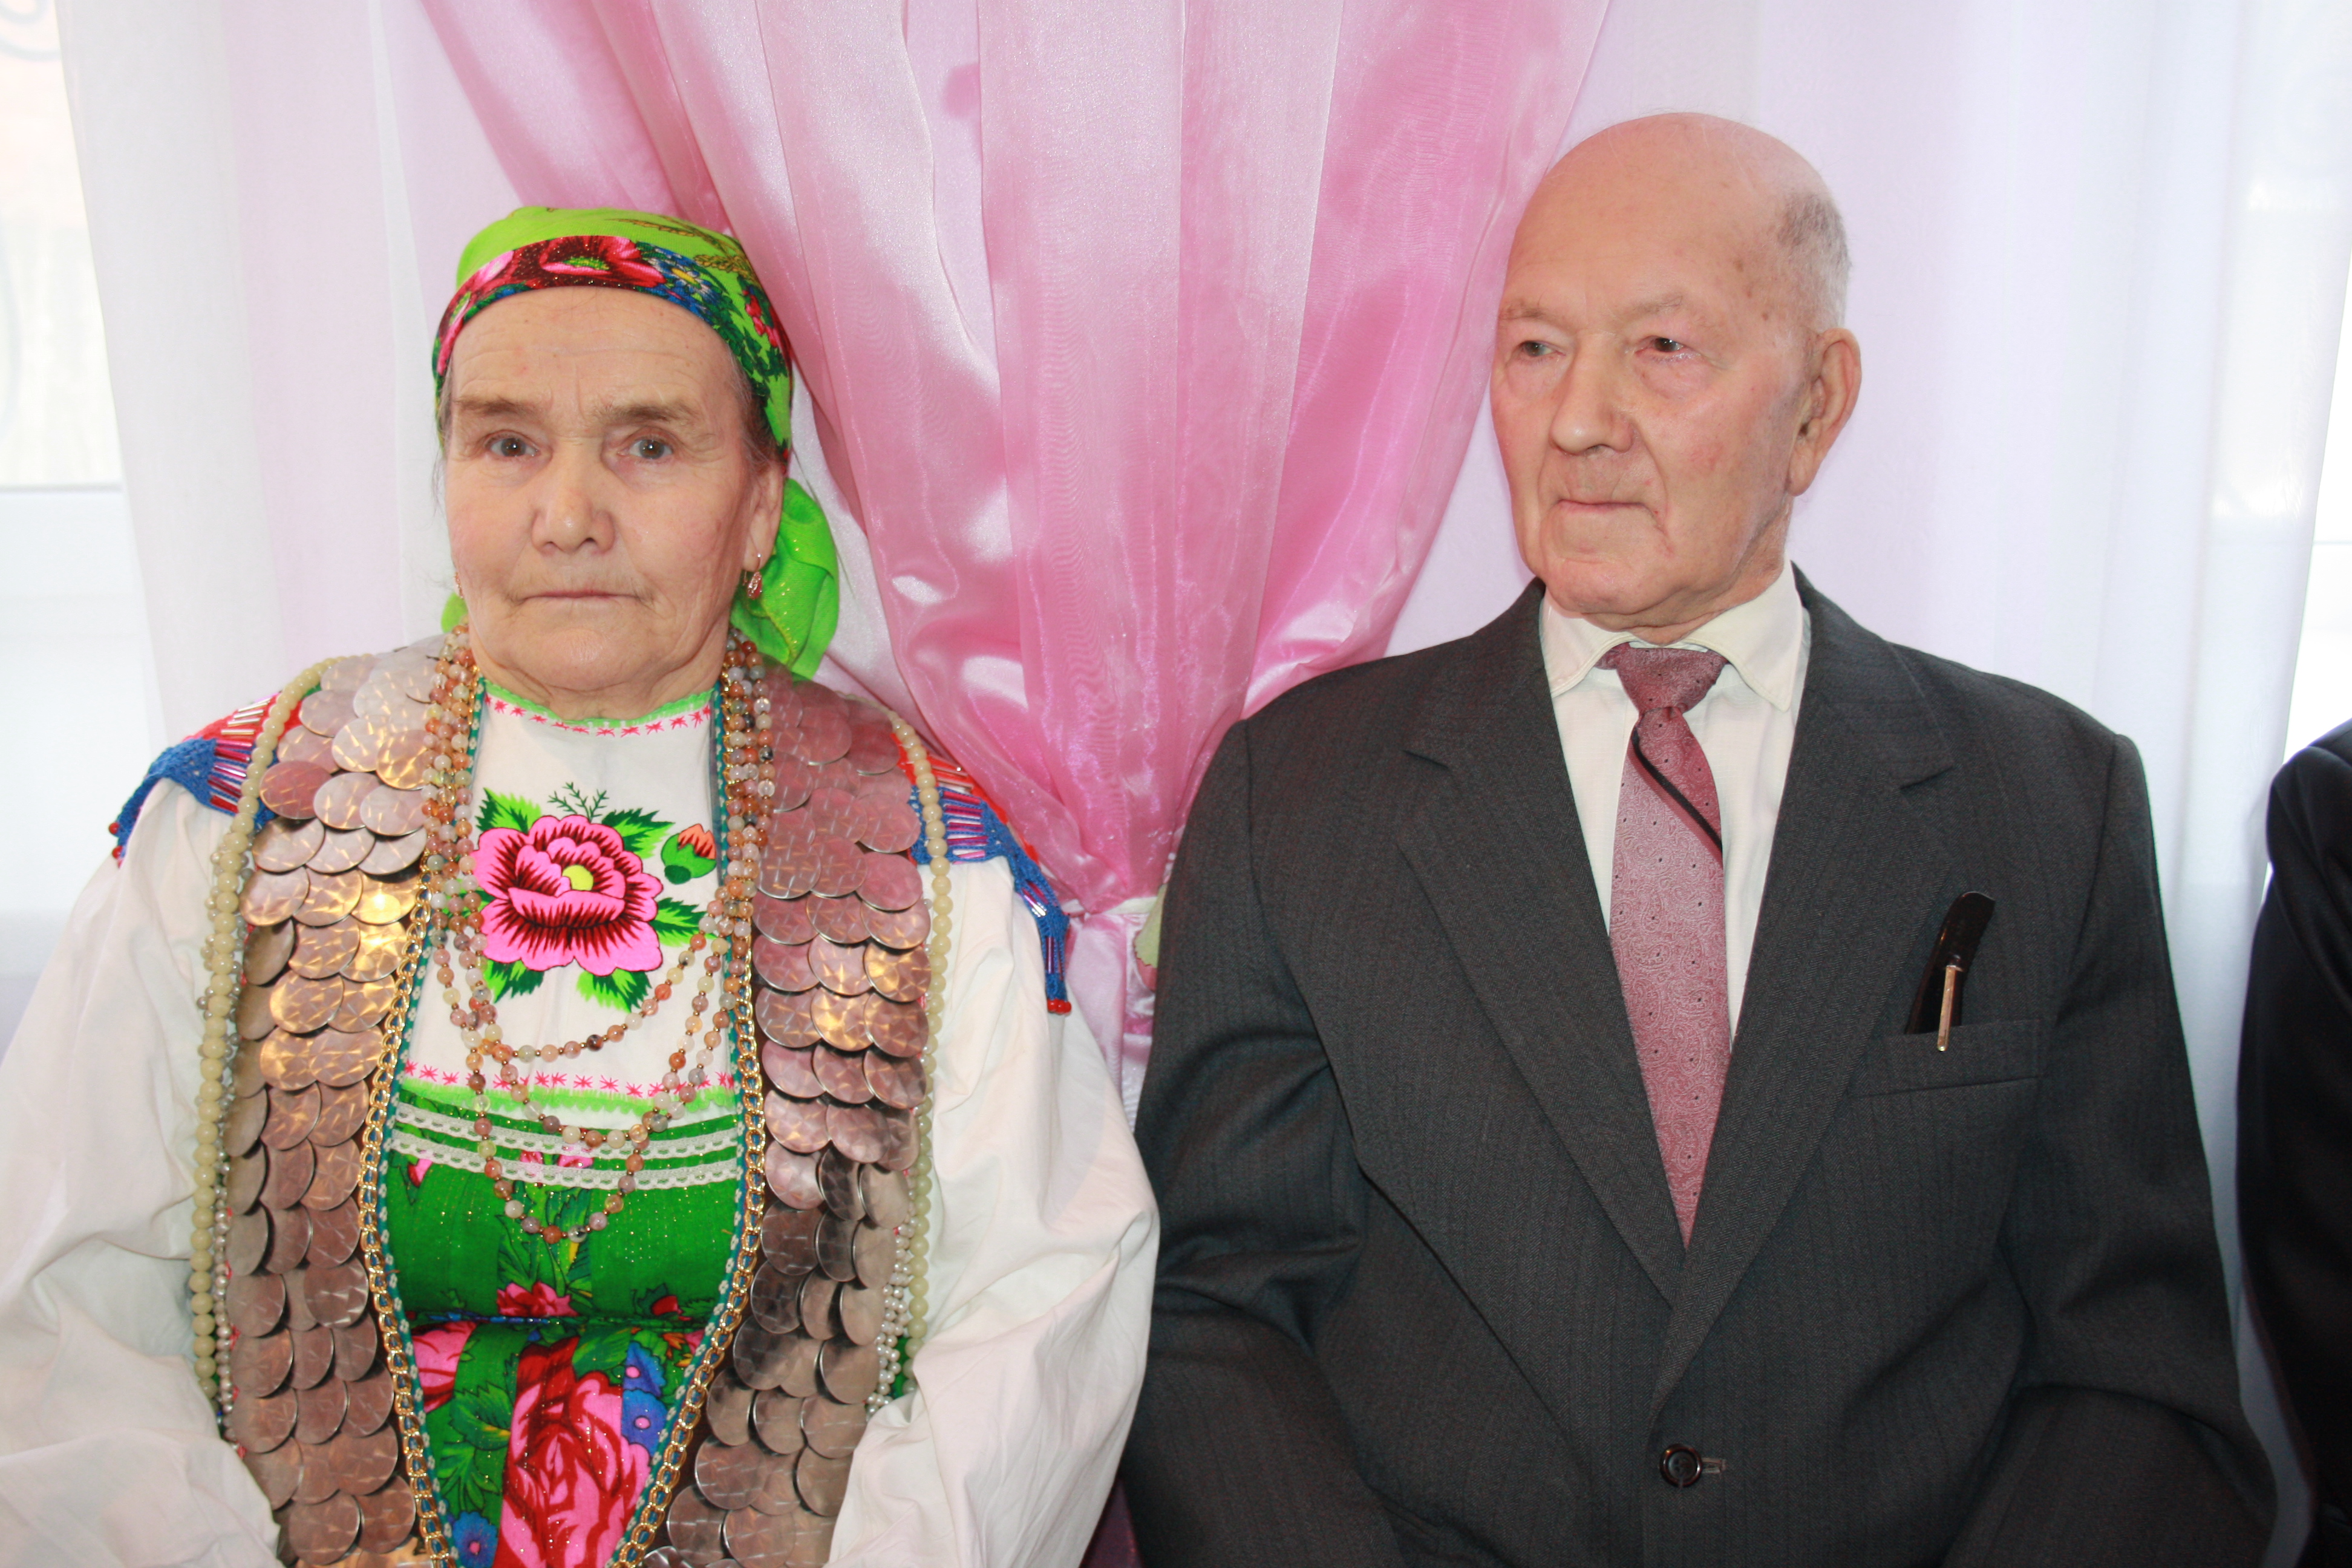 09:16 Супруги Горбуновы из Красночетайского района, прожившие в браке 55 лет, знают секрет семейного счастья